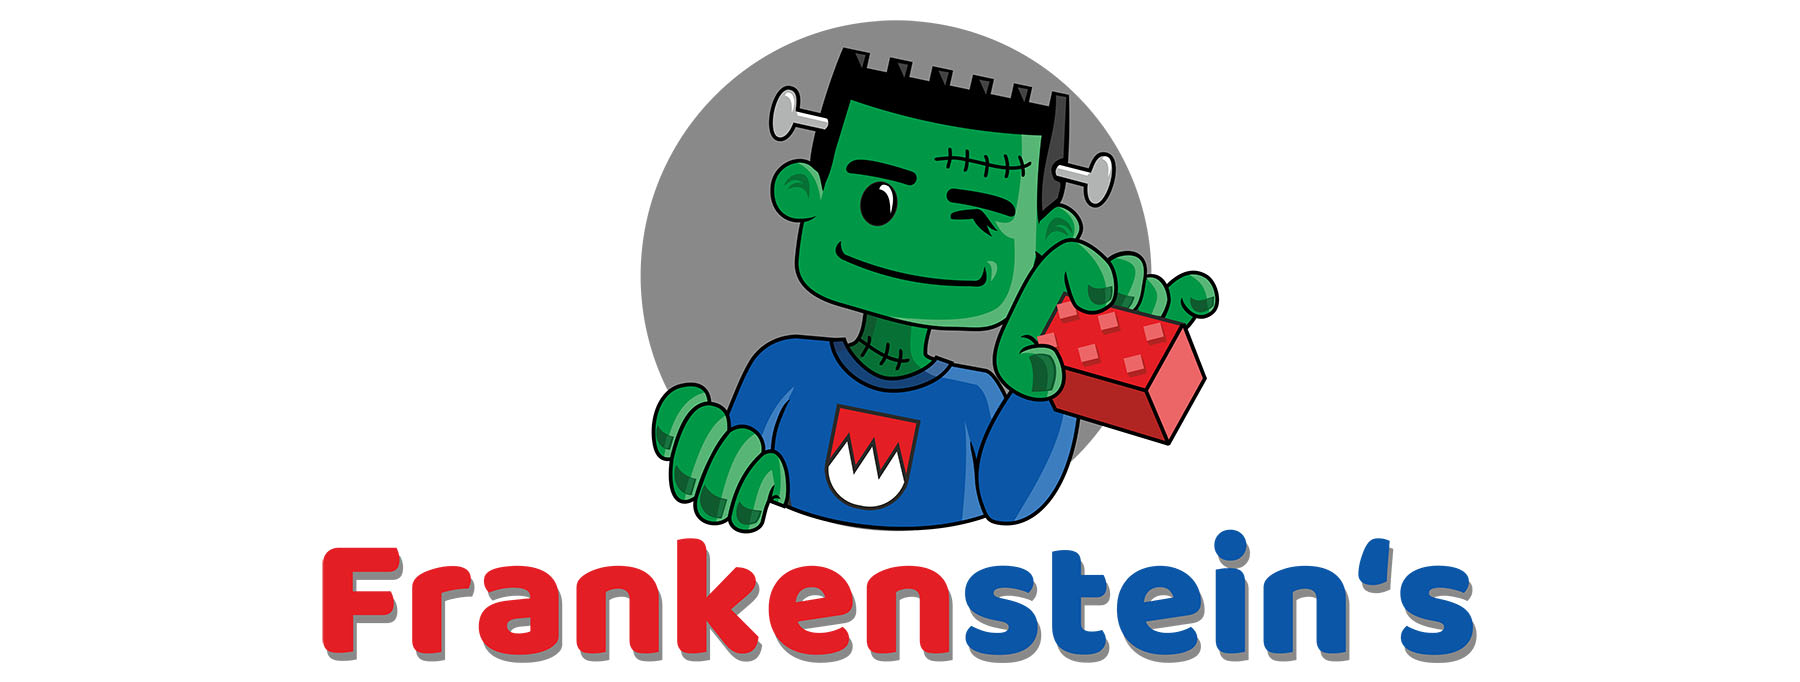 Frankensteins